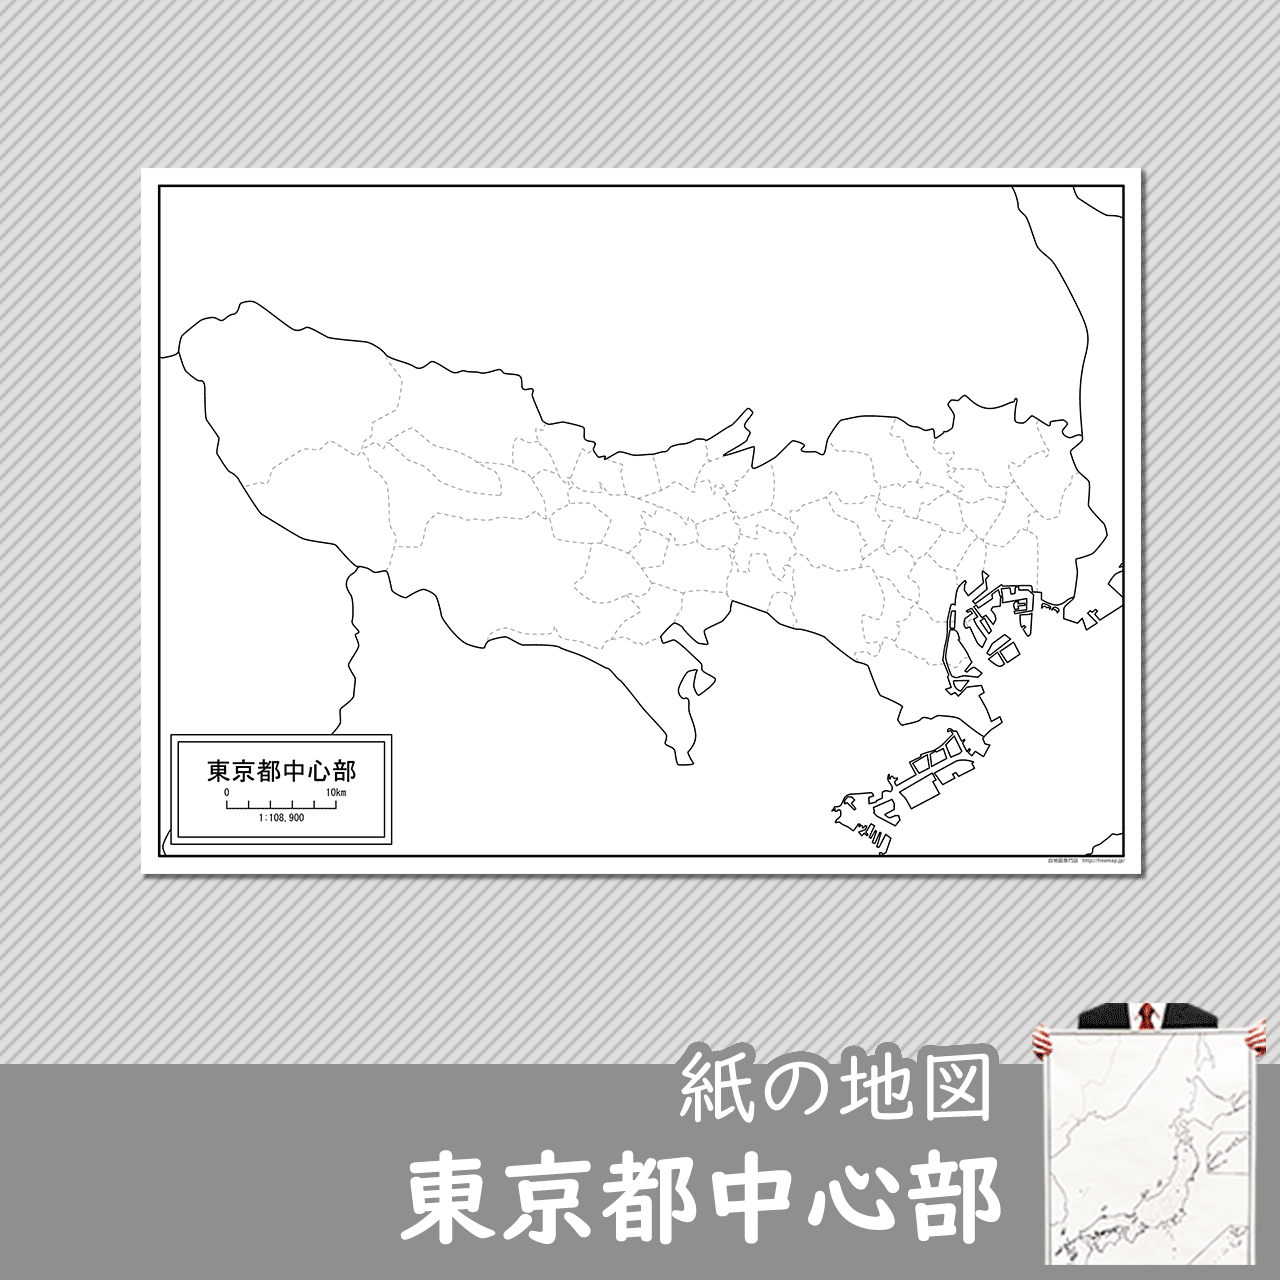 東京都中心部の紙の白地図のサムネイル